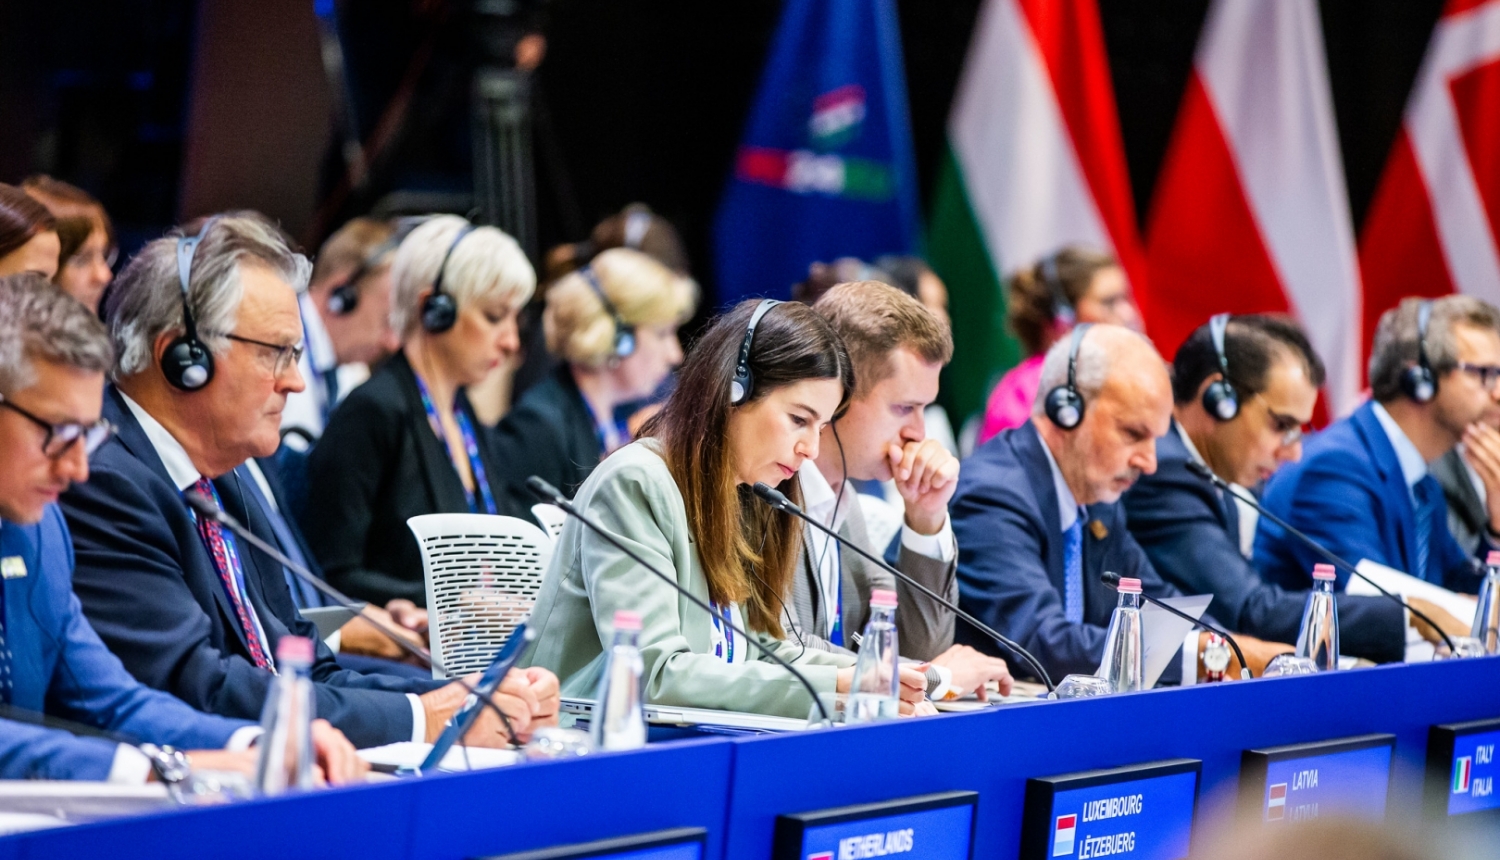 ES Padomes prezidējošās valsts Ungārijas foto